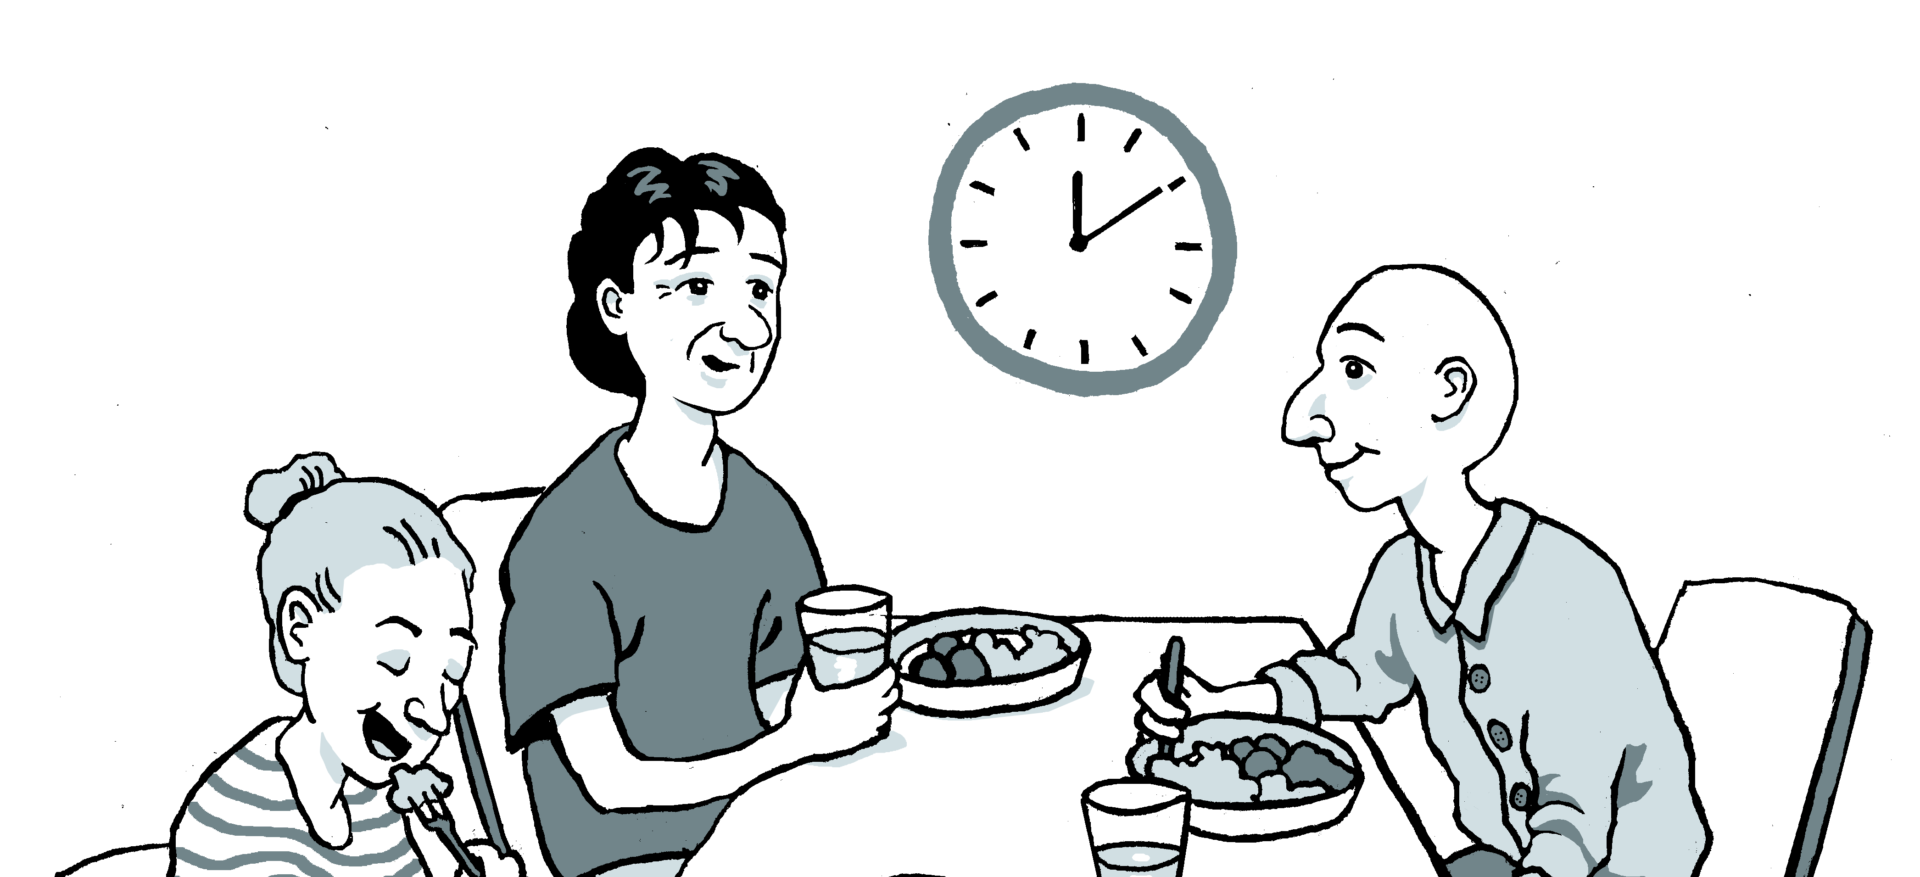 Kolme piirroshahmoa istuu pöydän ympärillä syömässä lounasta. Taustalla näkyy kello, joka näyttää lounasaikaa 12.10.